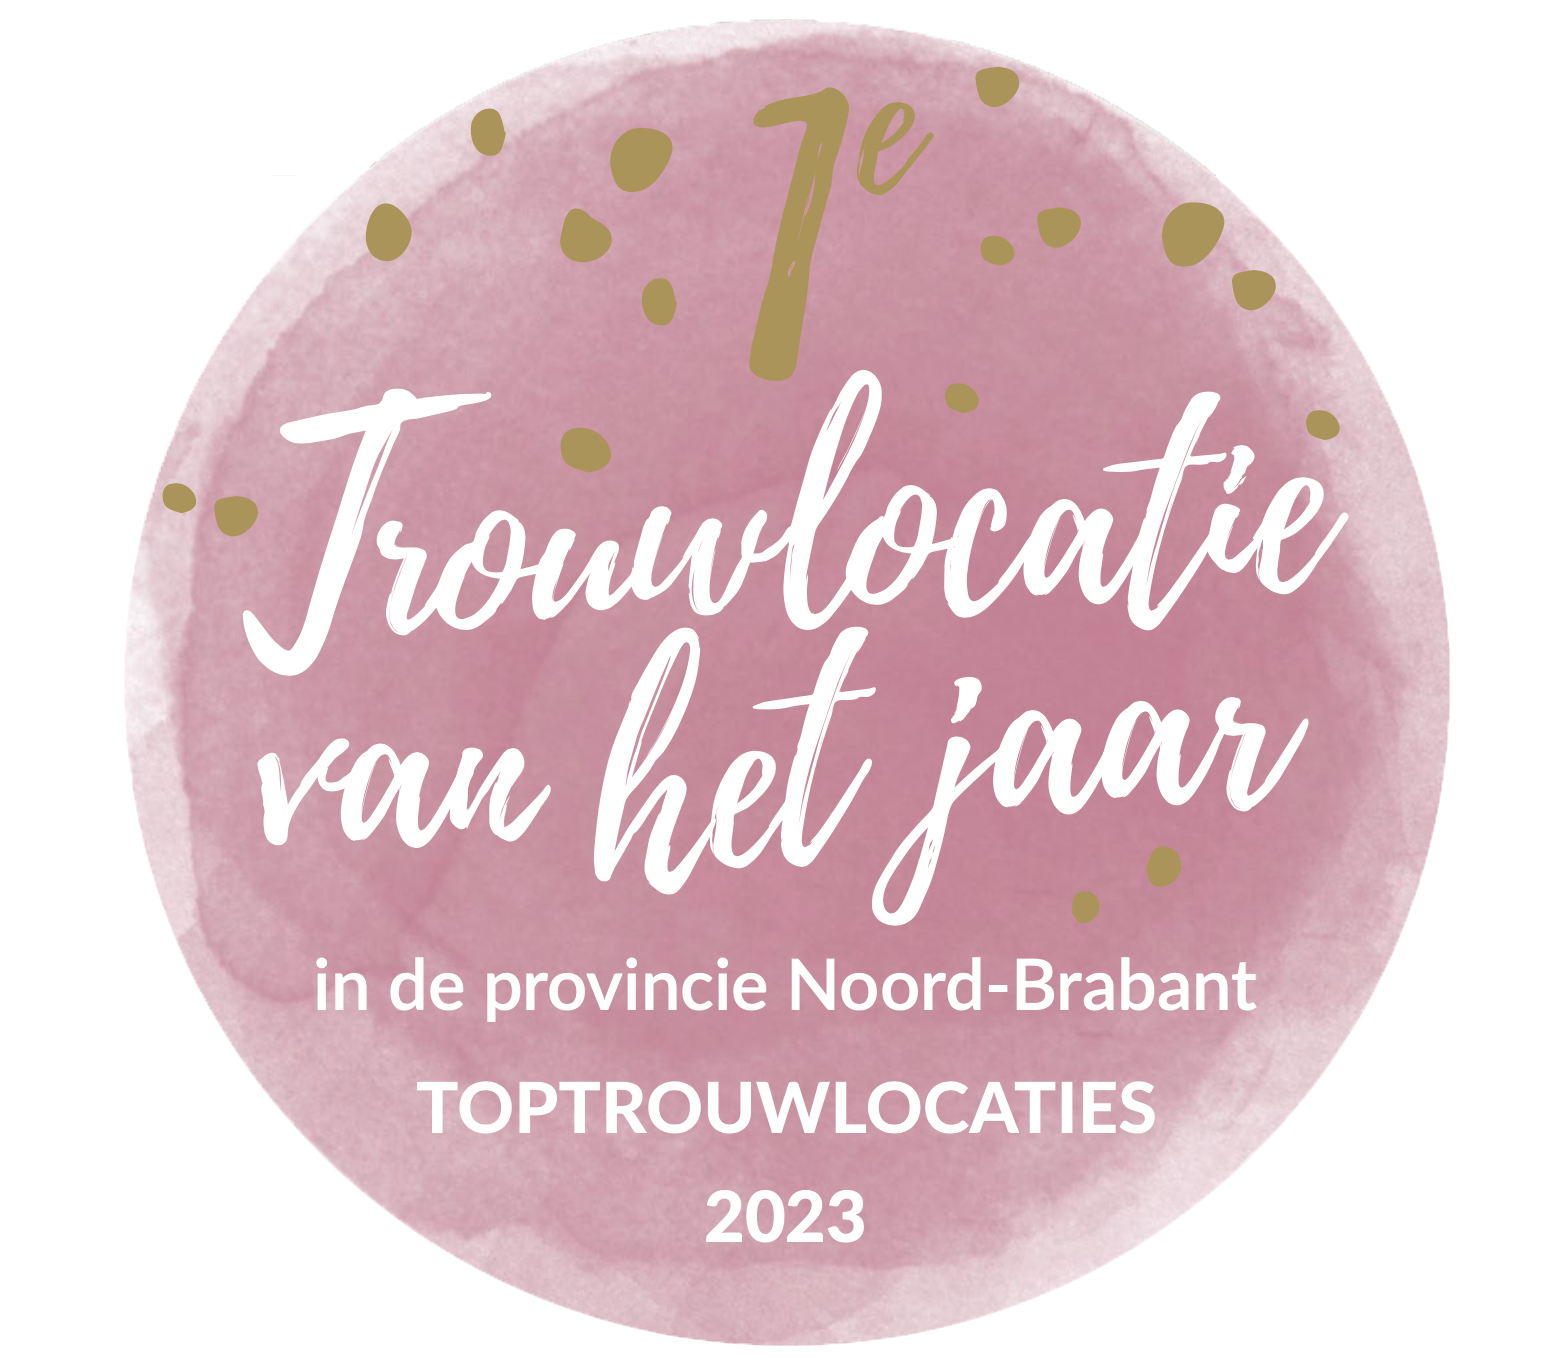 Trouwlocatie van het jaar Noord-Brabant 2023